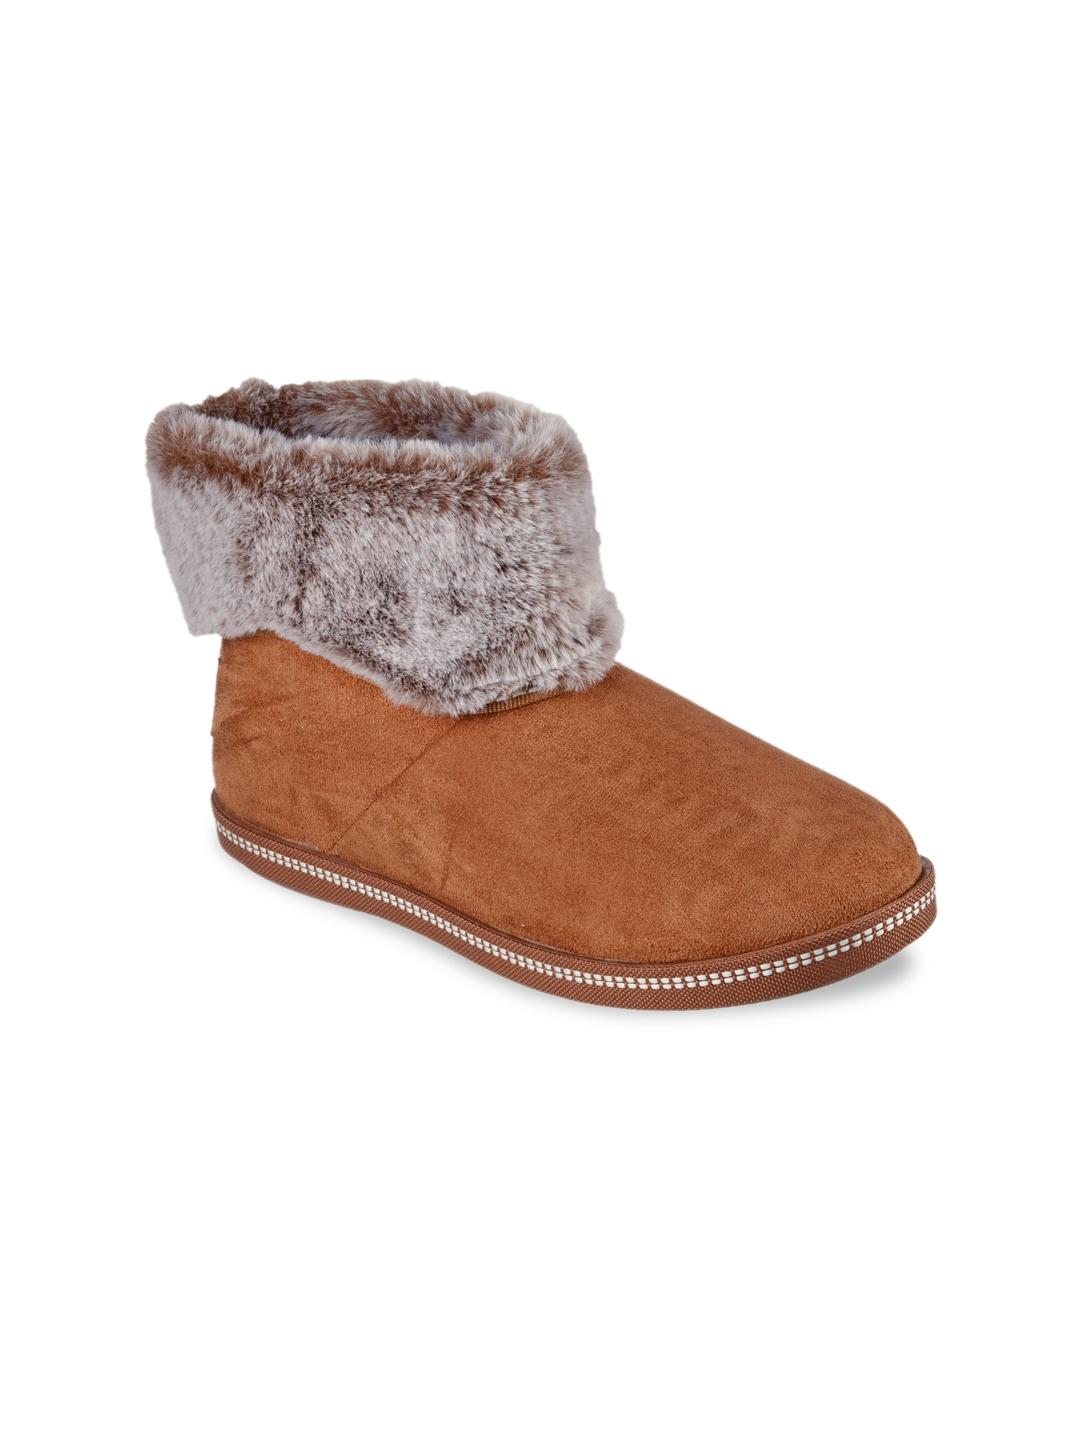 skechers-women-brown-fur-winter-boots